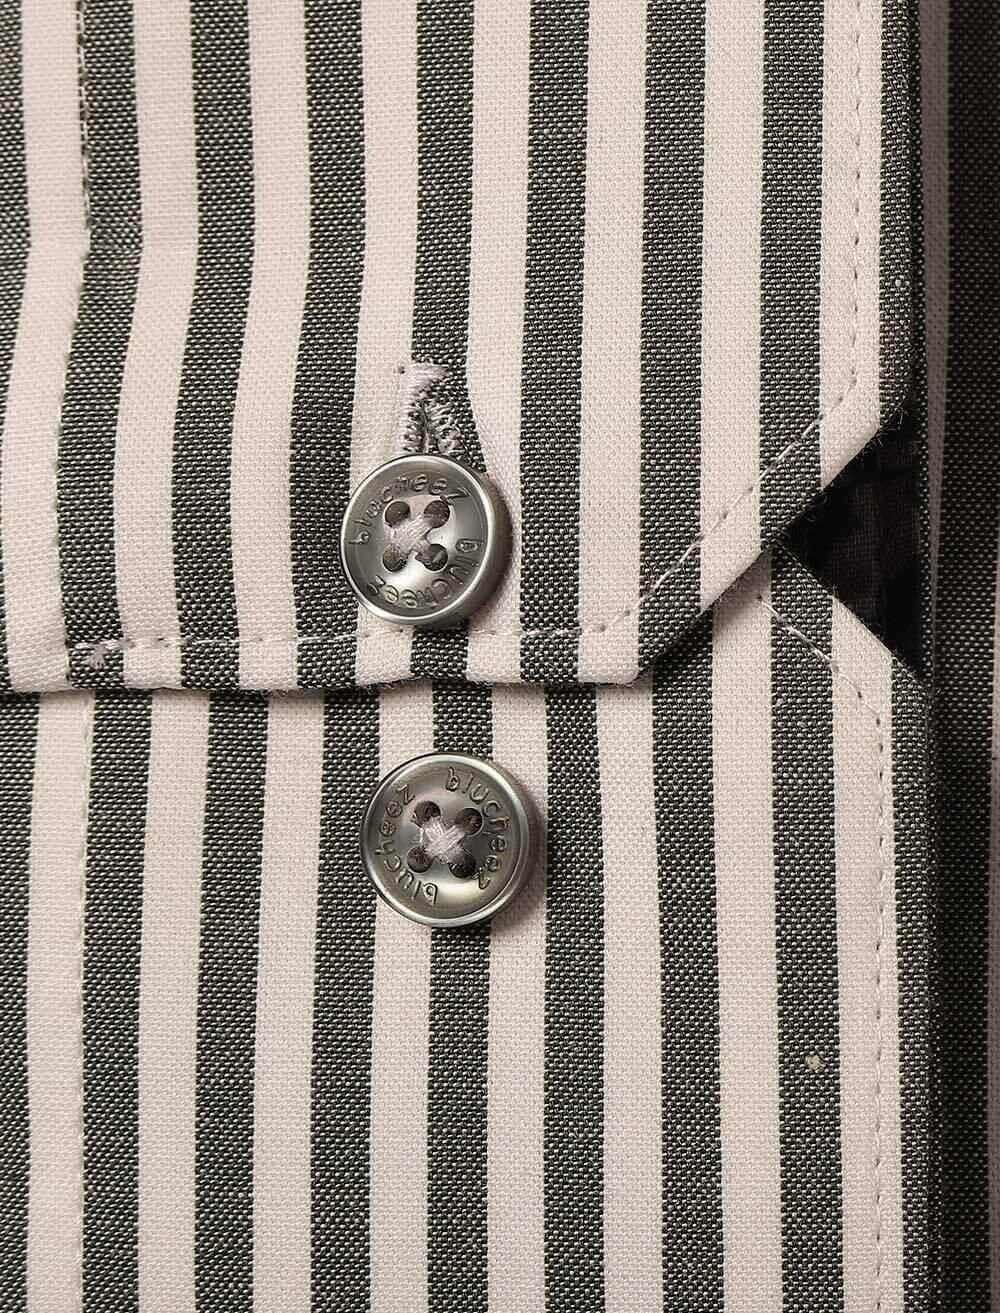 Stripe Men's Formal Shirt - Blucheez